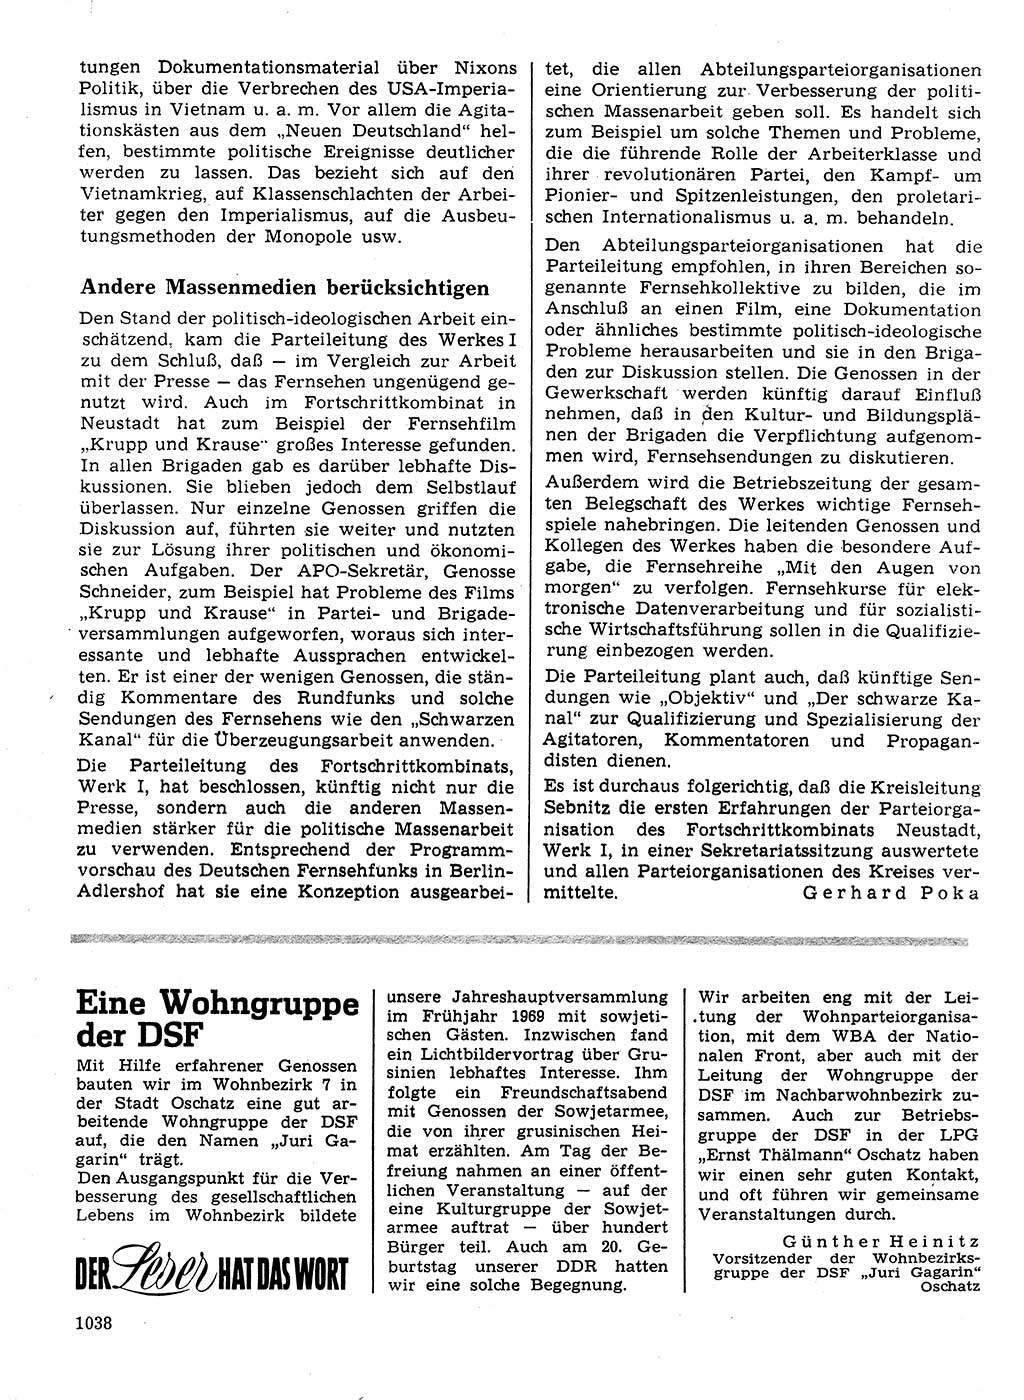 Neuer Weg (NW), Organ des Zentralkomitees (ZK) der SED (Sozialistische Einheitspartei Deutschlands) für Fragen des Parteilebens, 24. Jahrgang [Deutsche Demokratische Republik (DDR)] 1969, Seite 1038 (NW ZK SED DDR 1969, S. 1038)